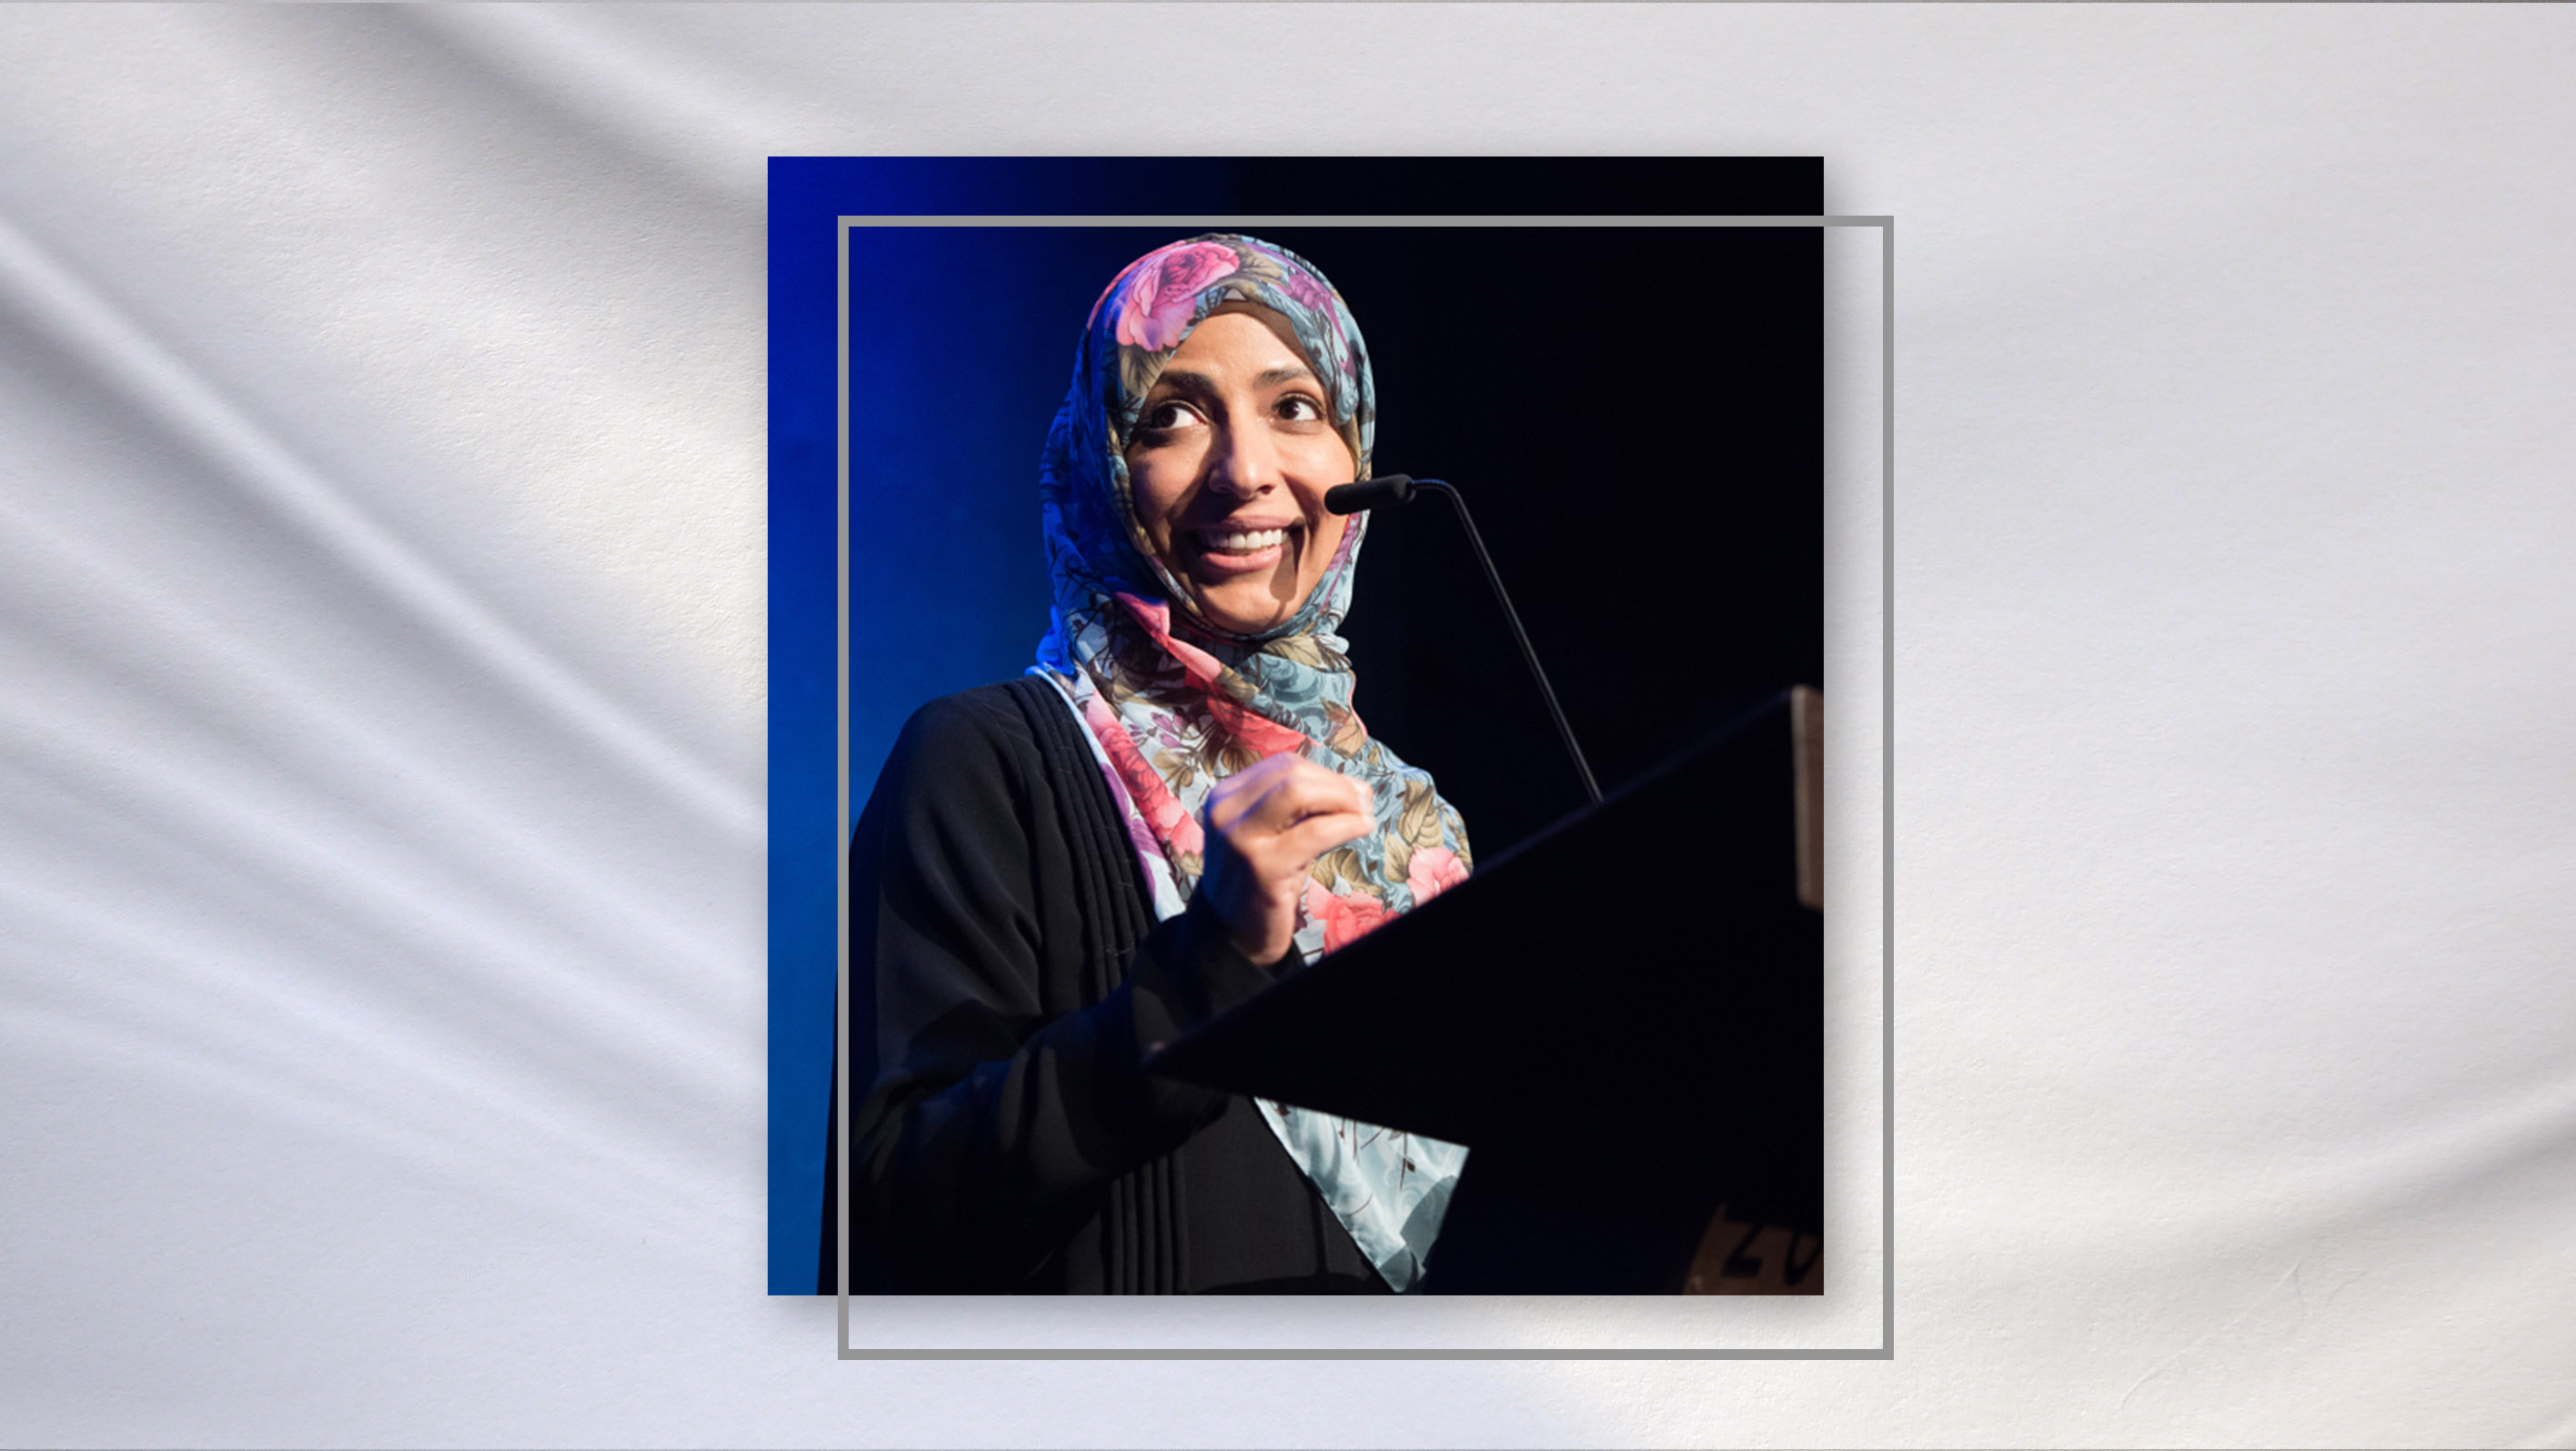 Speech by Mrs. Tawakkol Karman at “Fix The Food” in Oslo